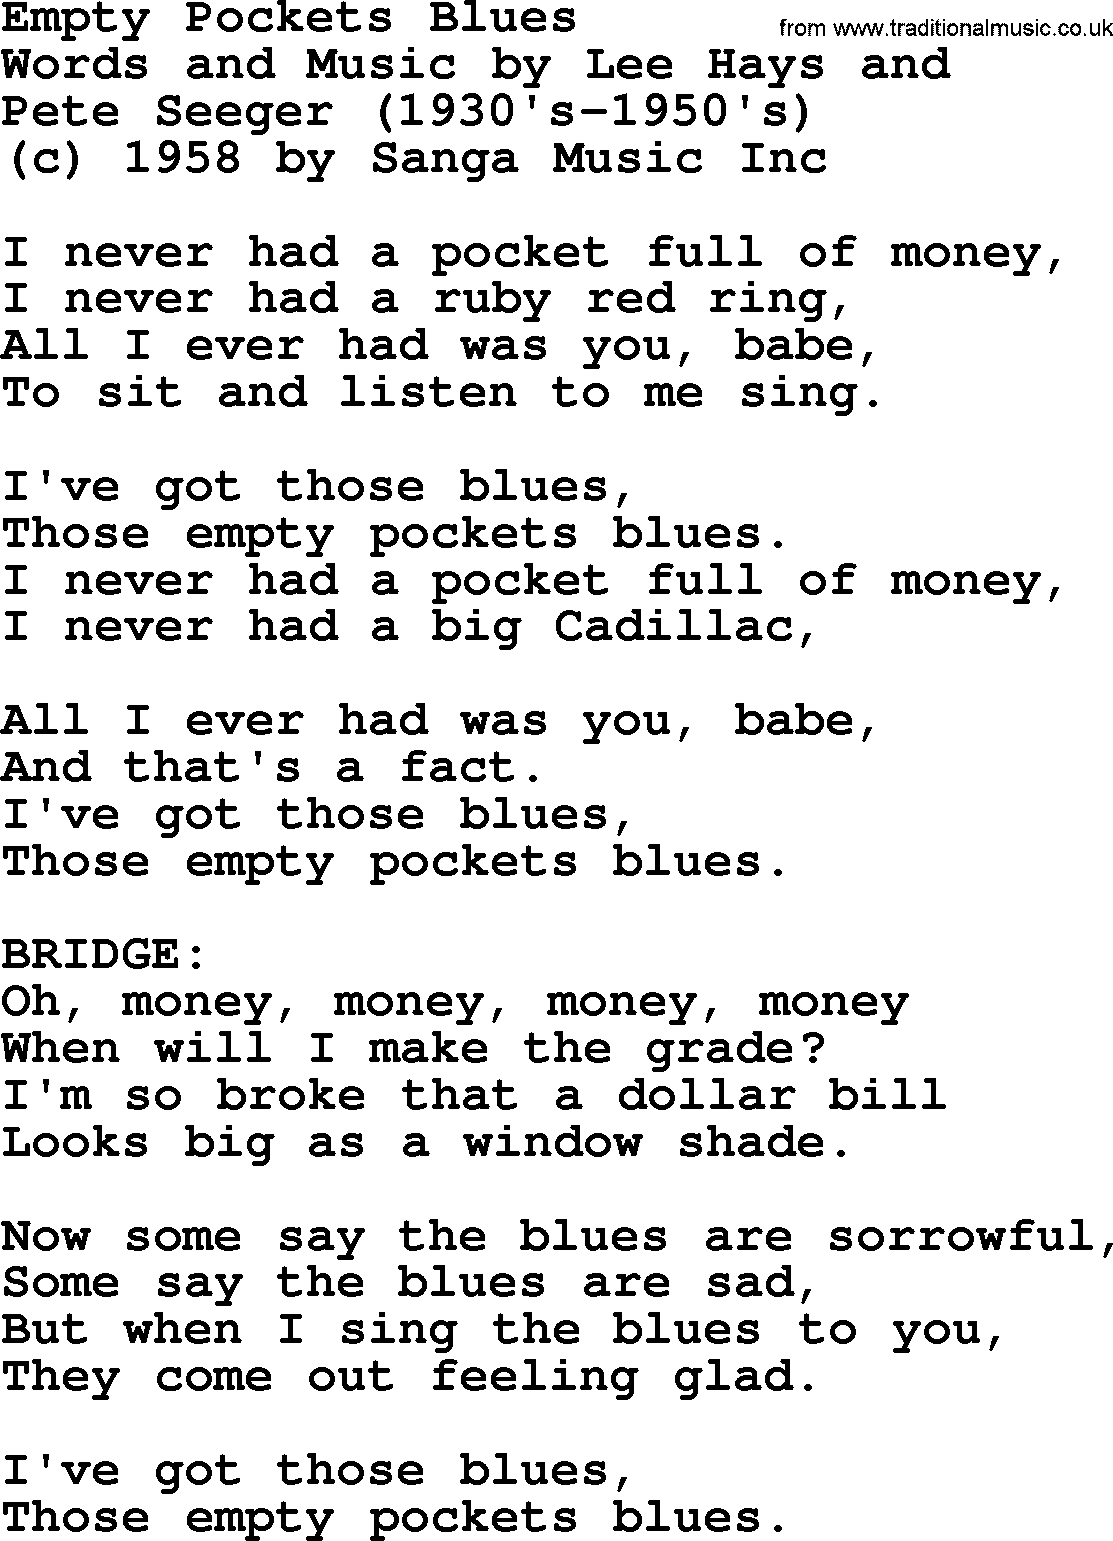 Pete Seeger song Empty Pockets Blues-Pete-Seeger.txt lyrics